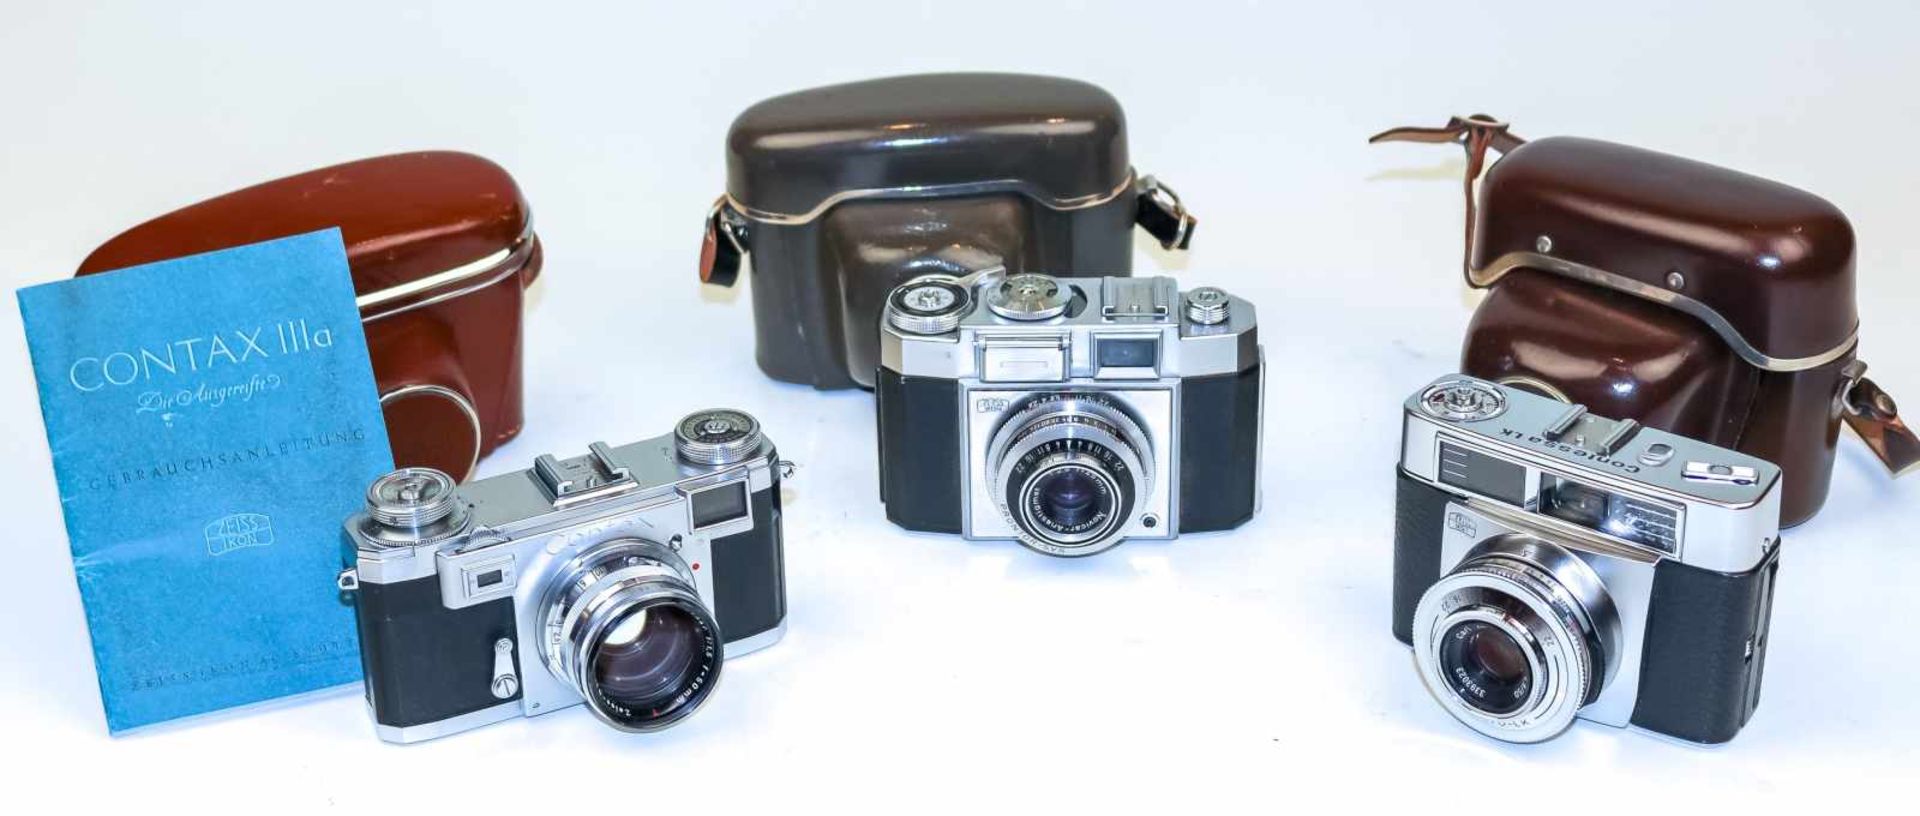 Contax IIIa Kleinbildkamera Um 1952/62Zeiss Ikon Stuttgart. Serien-Nr. B 99544. Objektiv Sonnar 1: